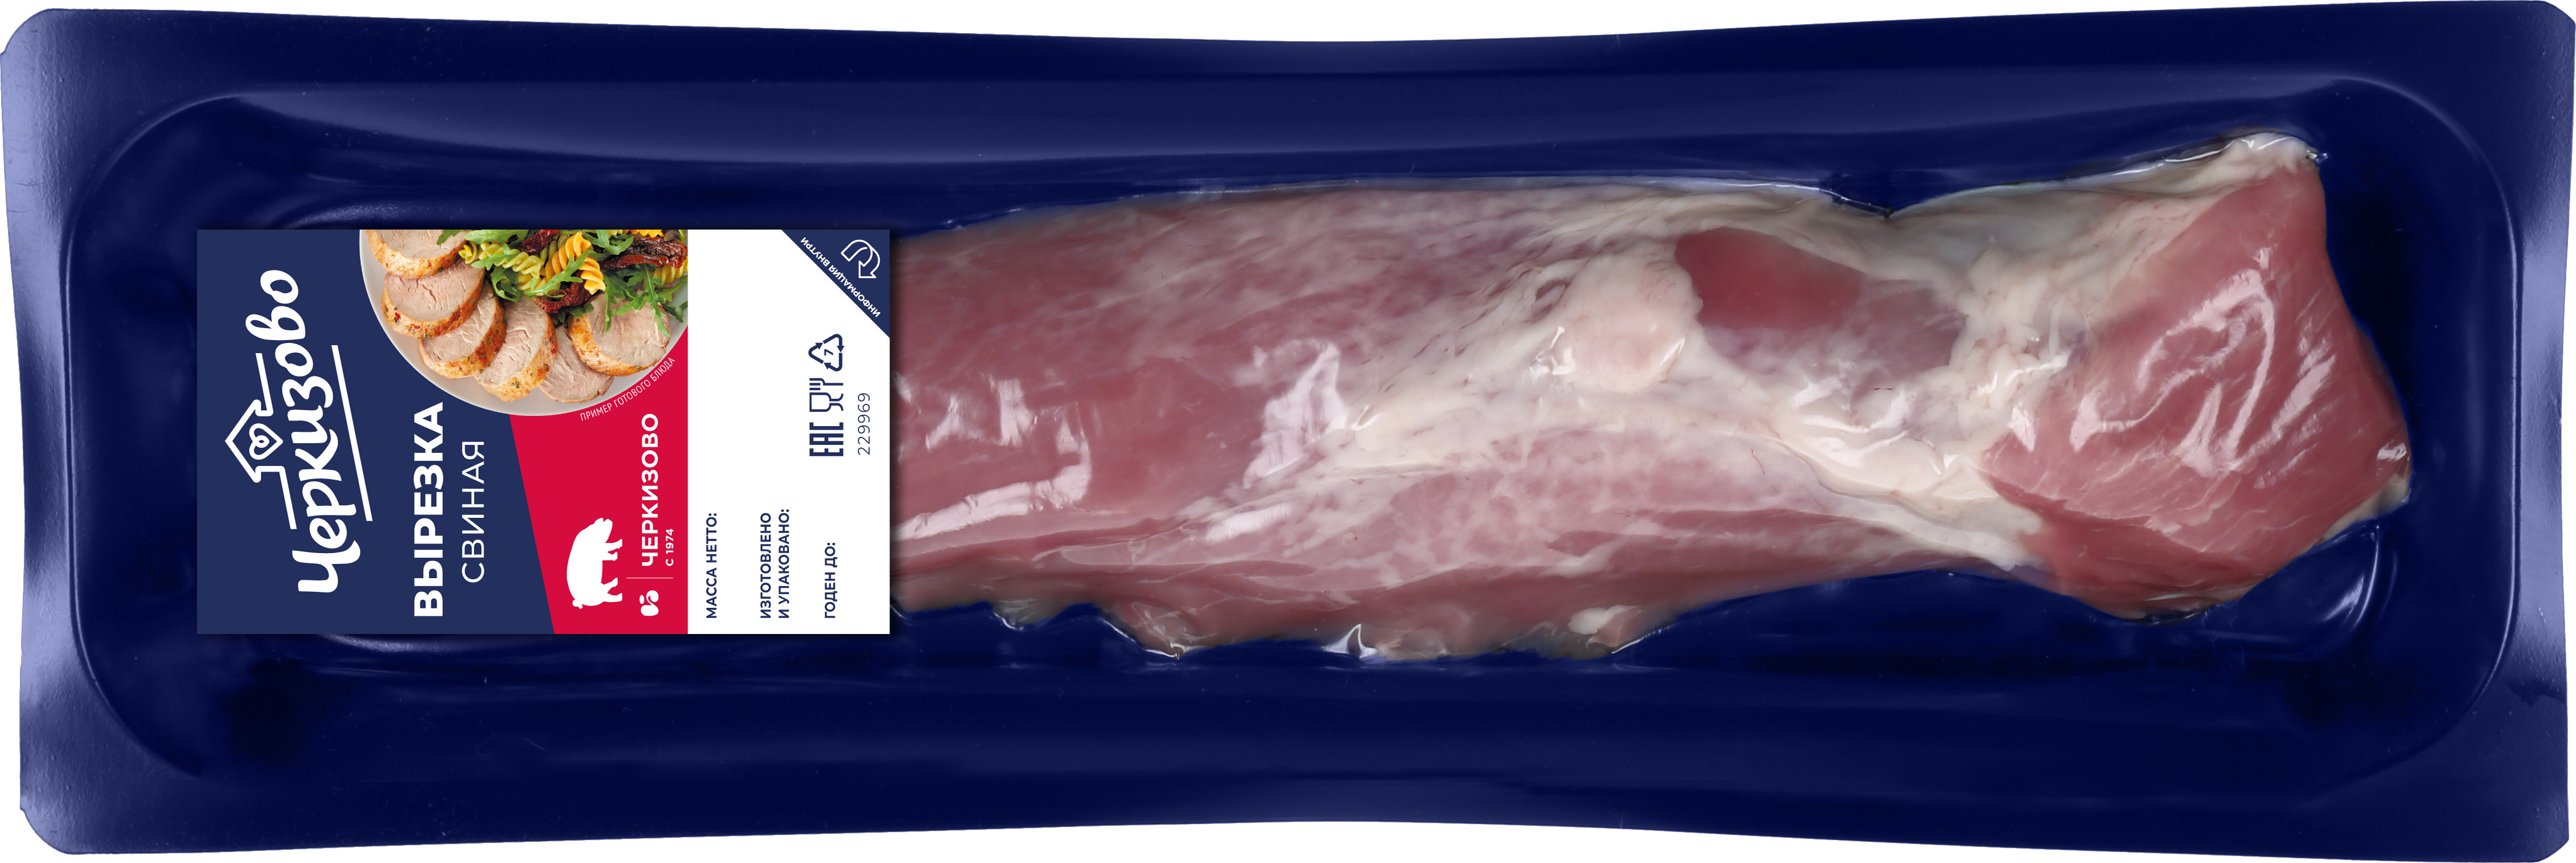 Свиная корейка, карбонат (карбонад): это какая часть туши